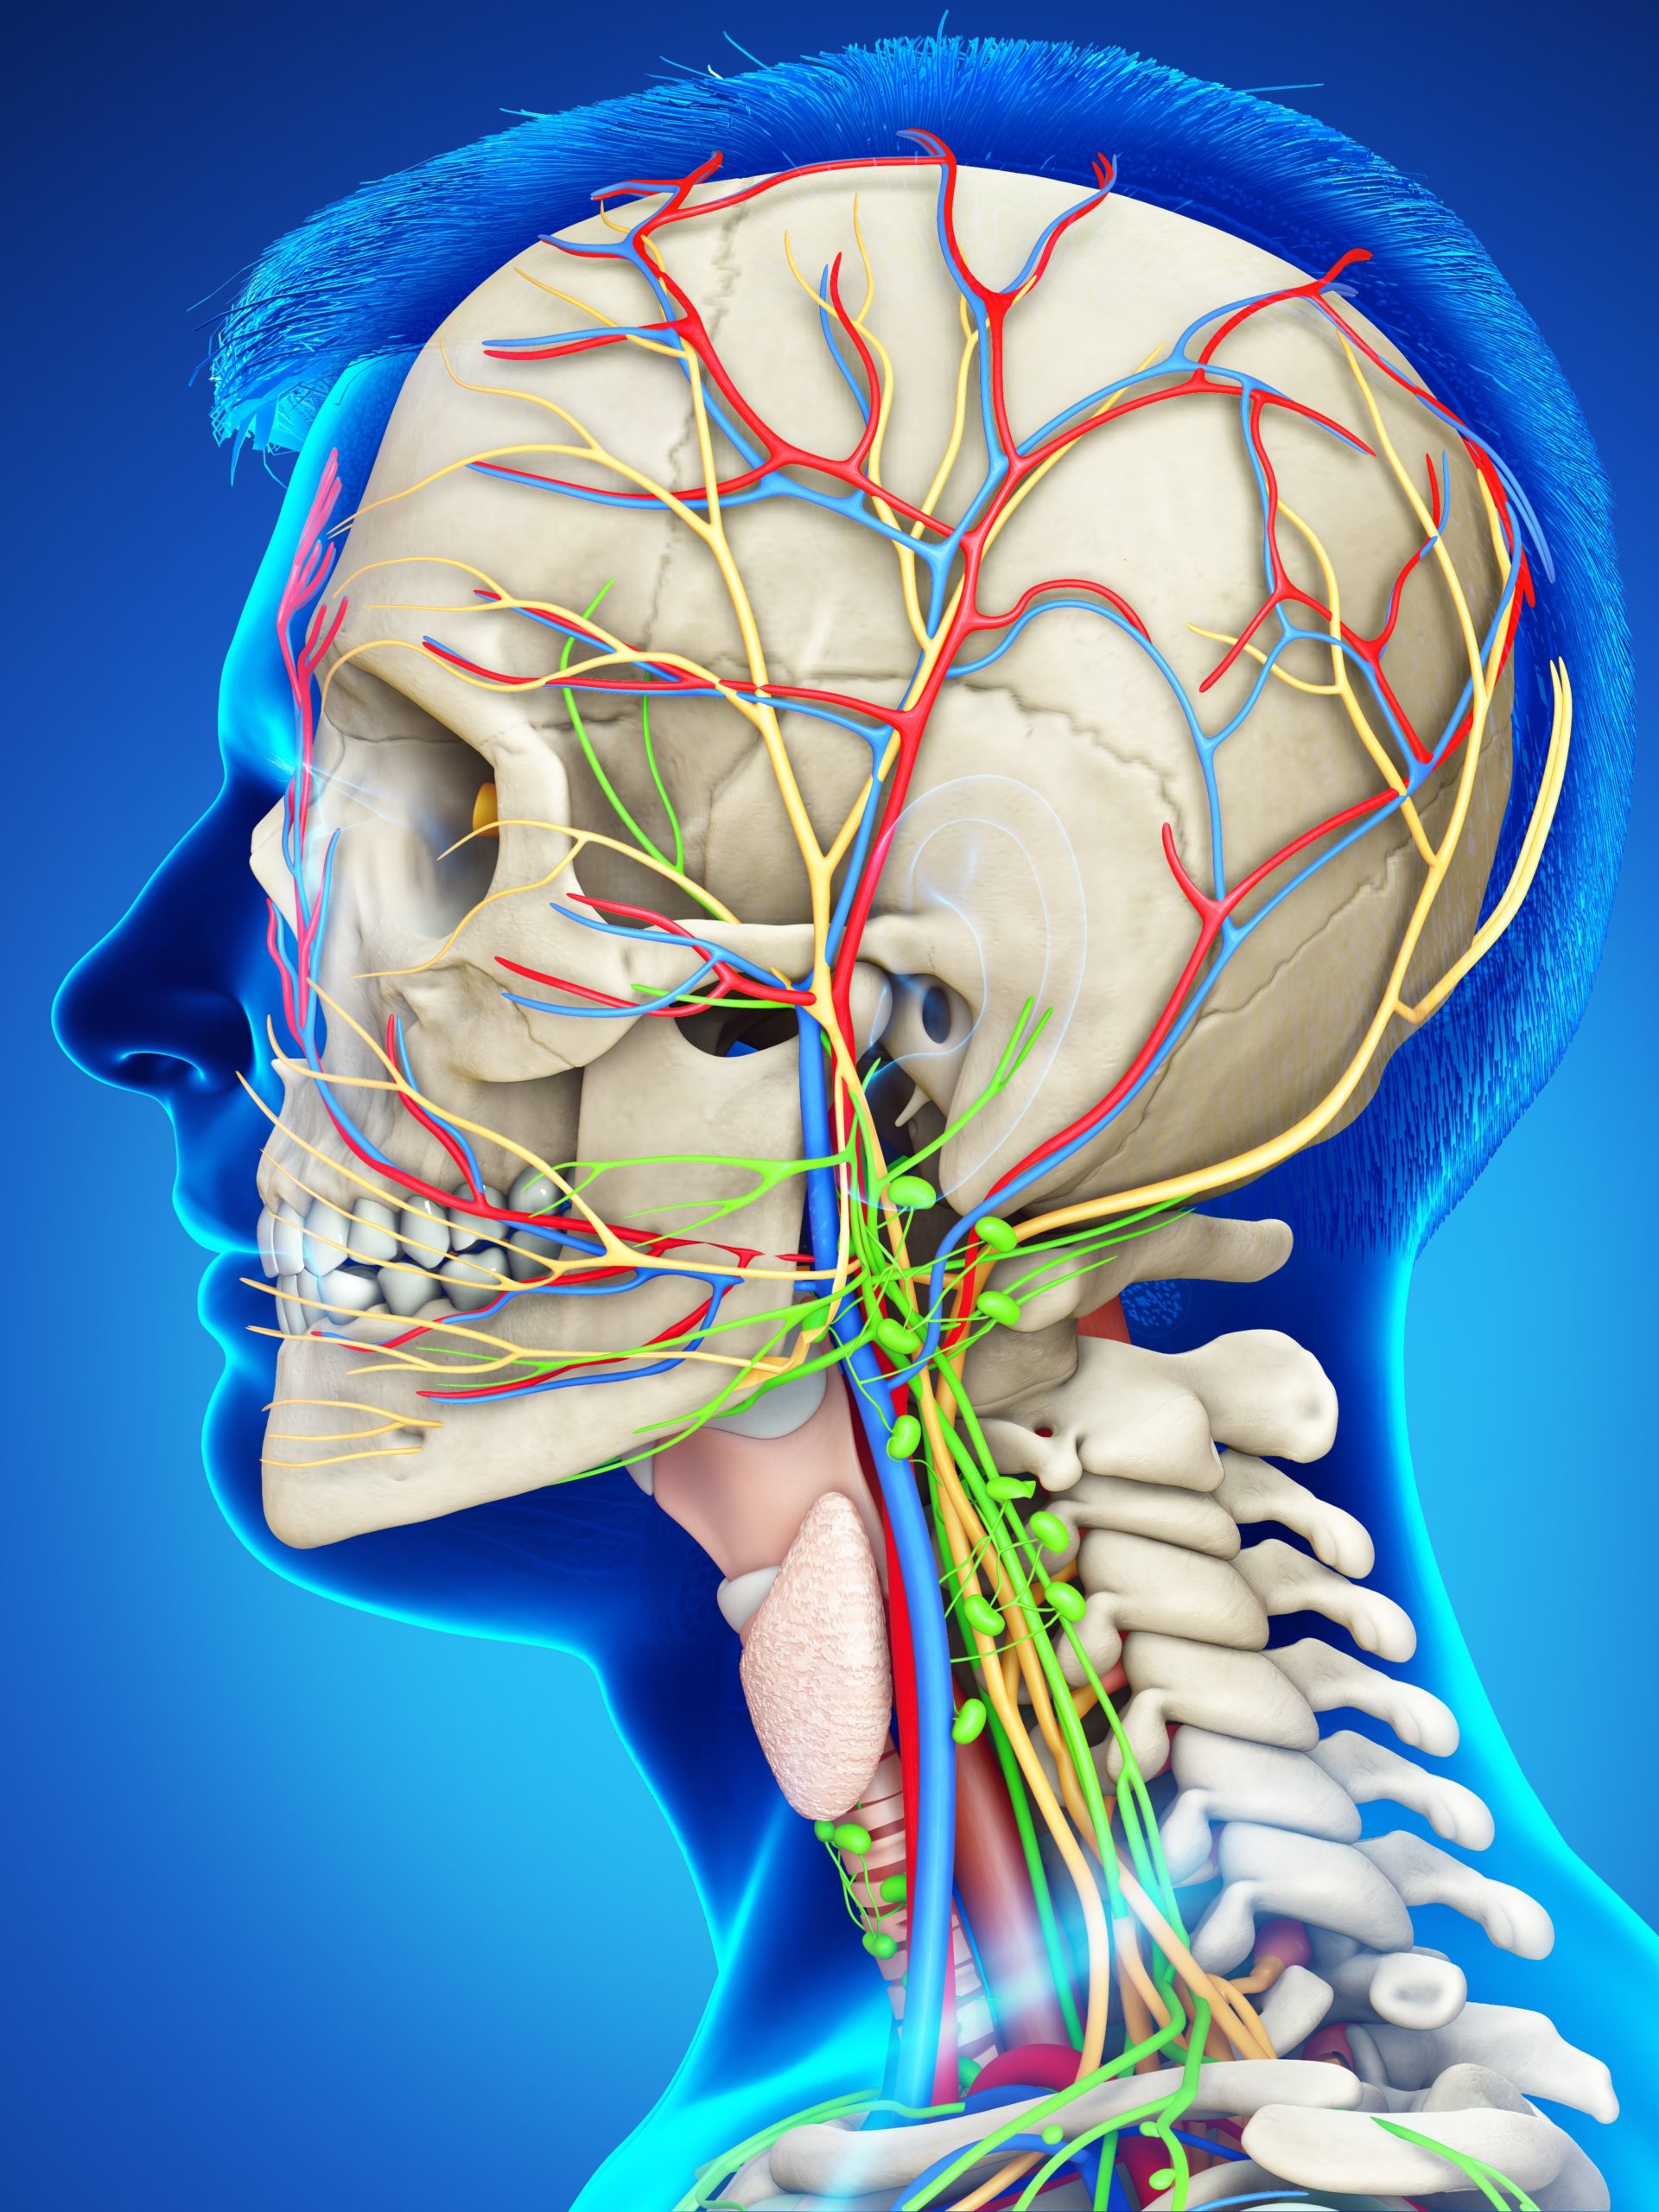 Viele Nerven umgeben das Ohr und strahlen aus in den ganzen Kopf. Das führt bei Bruximus oft zu Ohrensausen und Kieferschmerzen